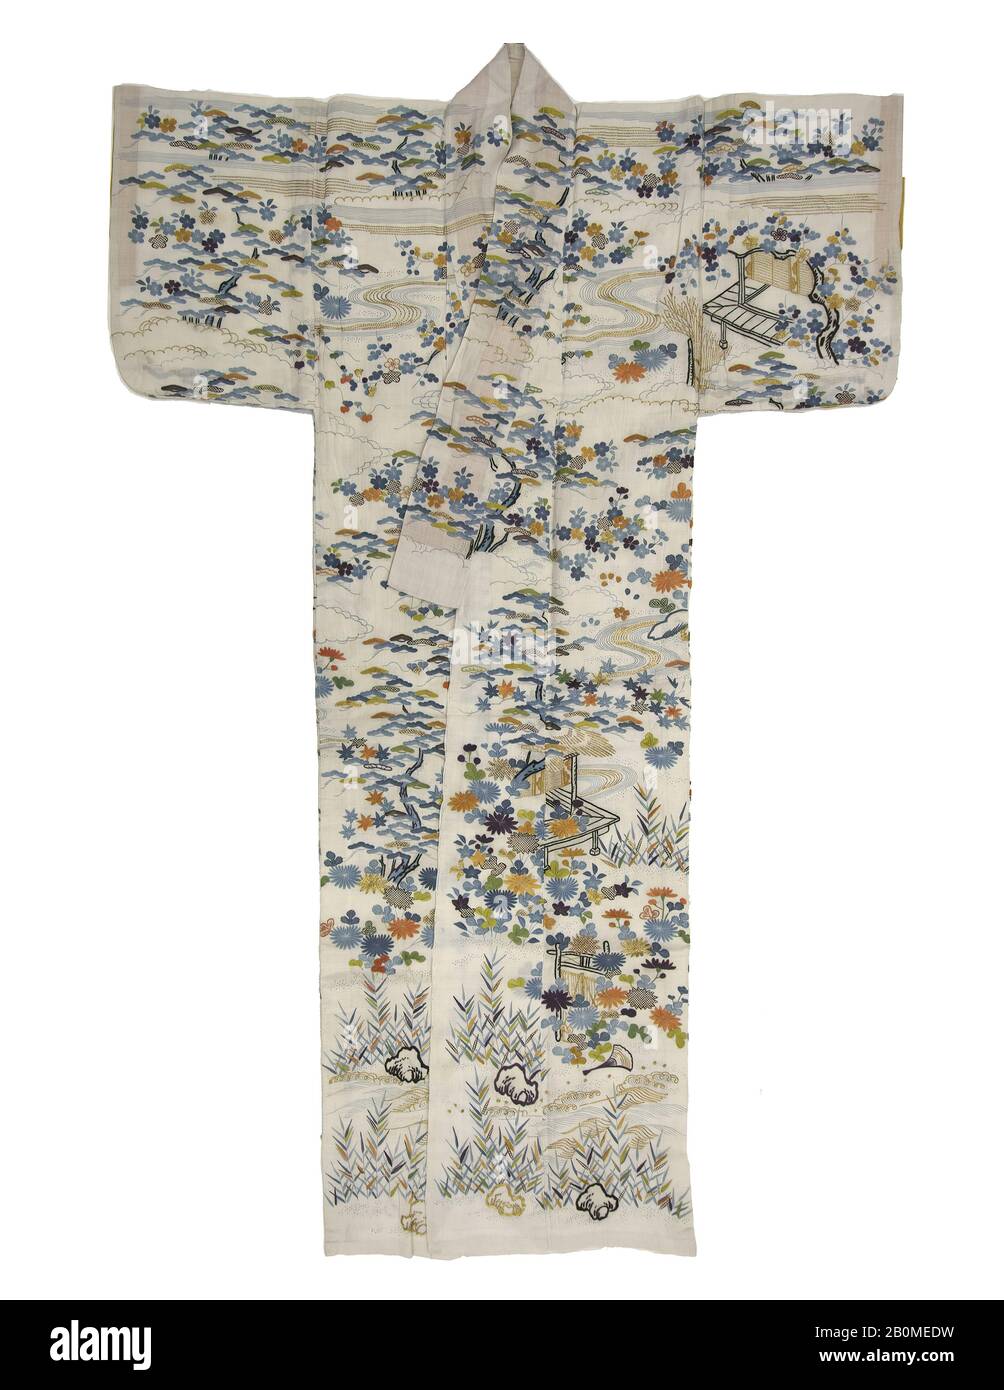 Robe d'été (Katabira) avec paysages saisonniers et scènes de La Tale de Genji, Japon, période Edo (1615–1868), deuxième moitié du XVIIIe siècle, Japon, rarie à armure unie avec teinture de pâte, broderie à fils de soie, couching à fils d'or, 73 × 47 1/2 po. (185,4 × 120,7 cm), textiles-costumes Banque D'Images